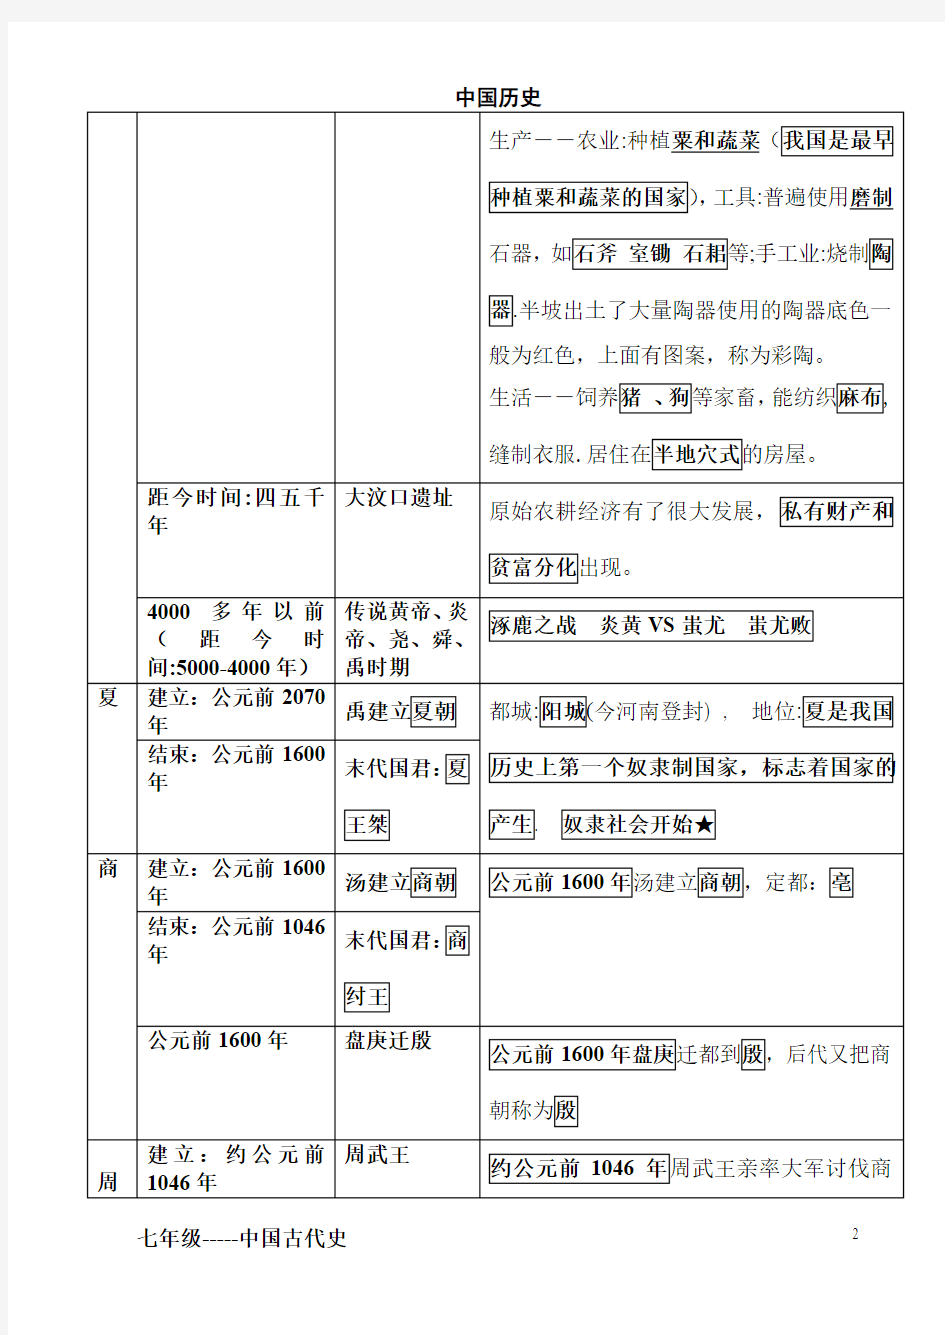 七年级上册中国历史大事件年表(通用版)